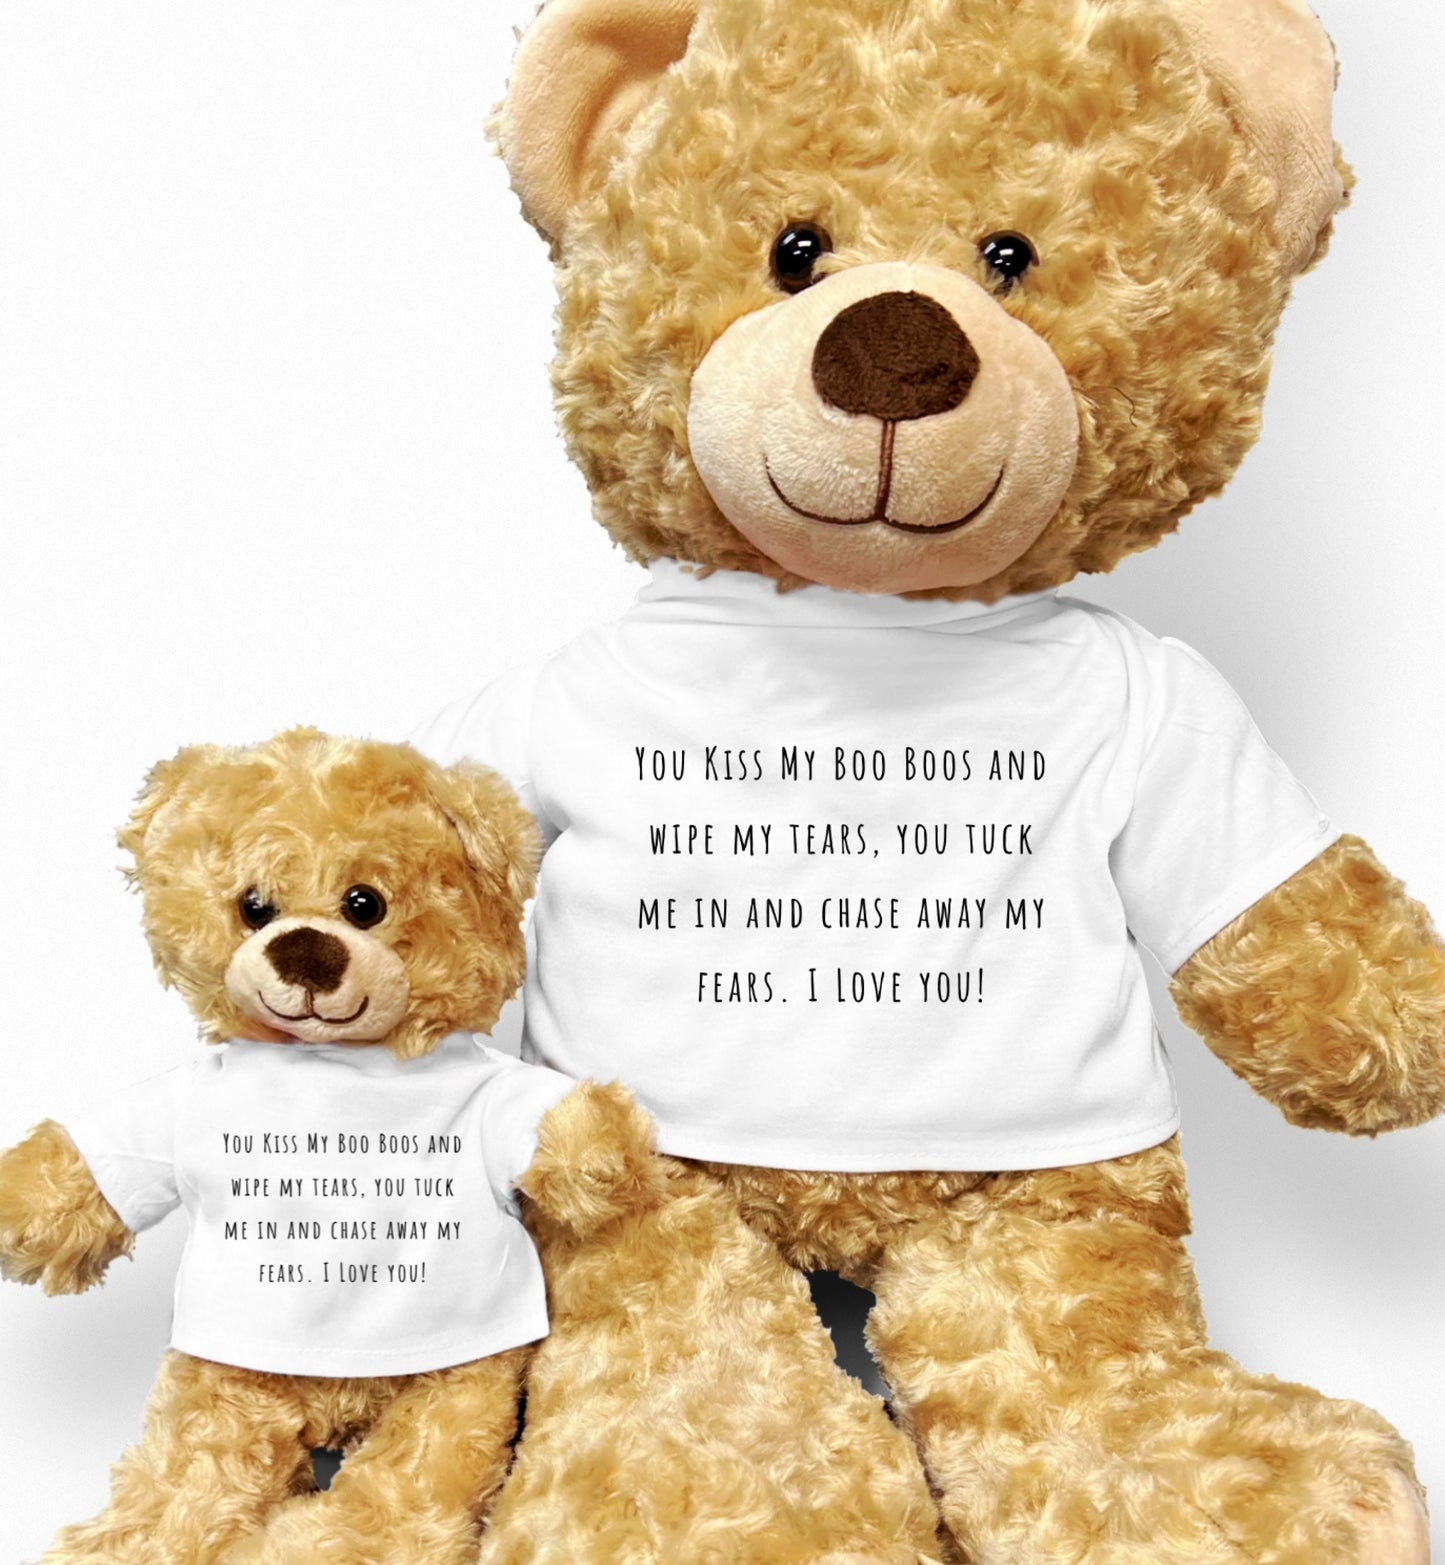 Teddy Bear From Child, Teddy Bear For Mom, Teddy Bear For Dad, Customizable Teddy Bear, Gift From Child, Gift for Caretaker, Babysitter